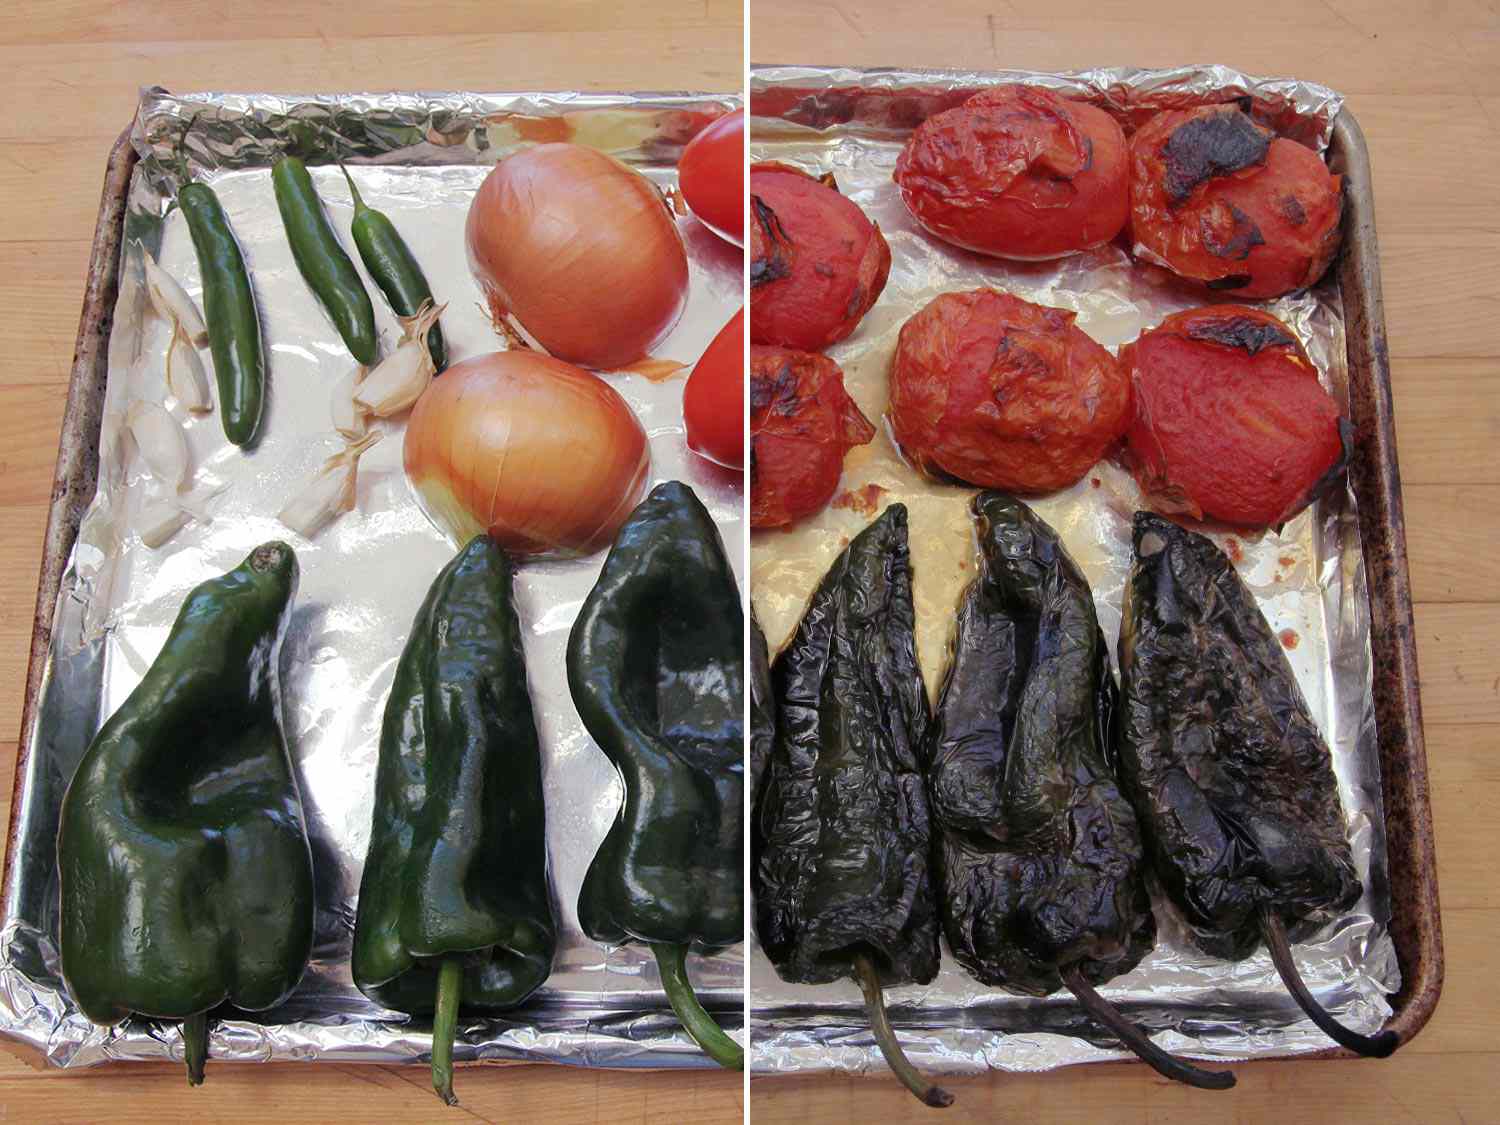 未烤的辣椒、洋葱、大蒜、西红柿、波布拉诺辣椒和烤蔬菜的分裂图像。gydF4y2Ba